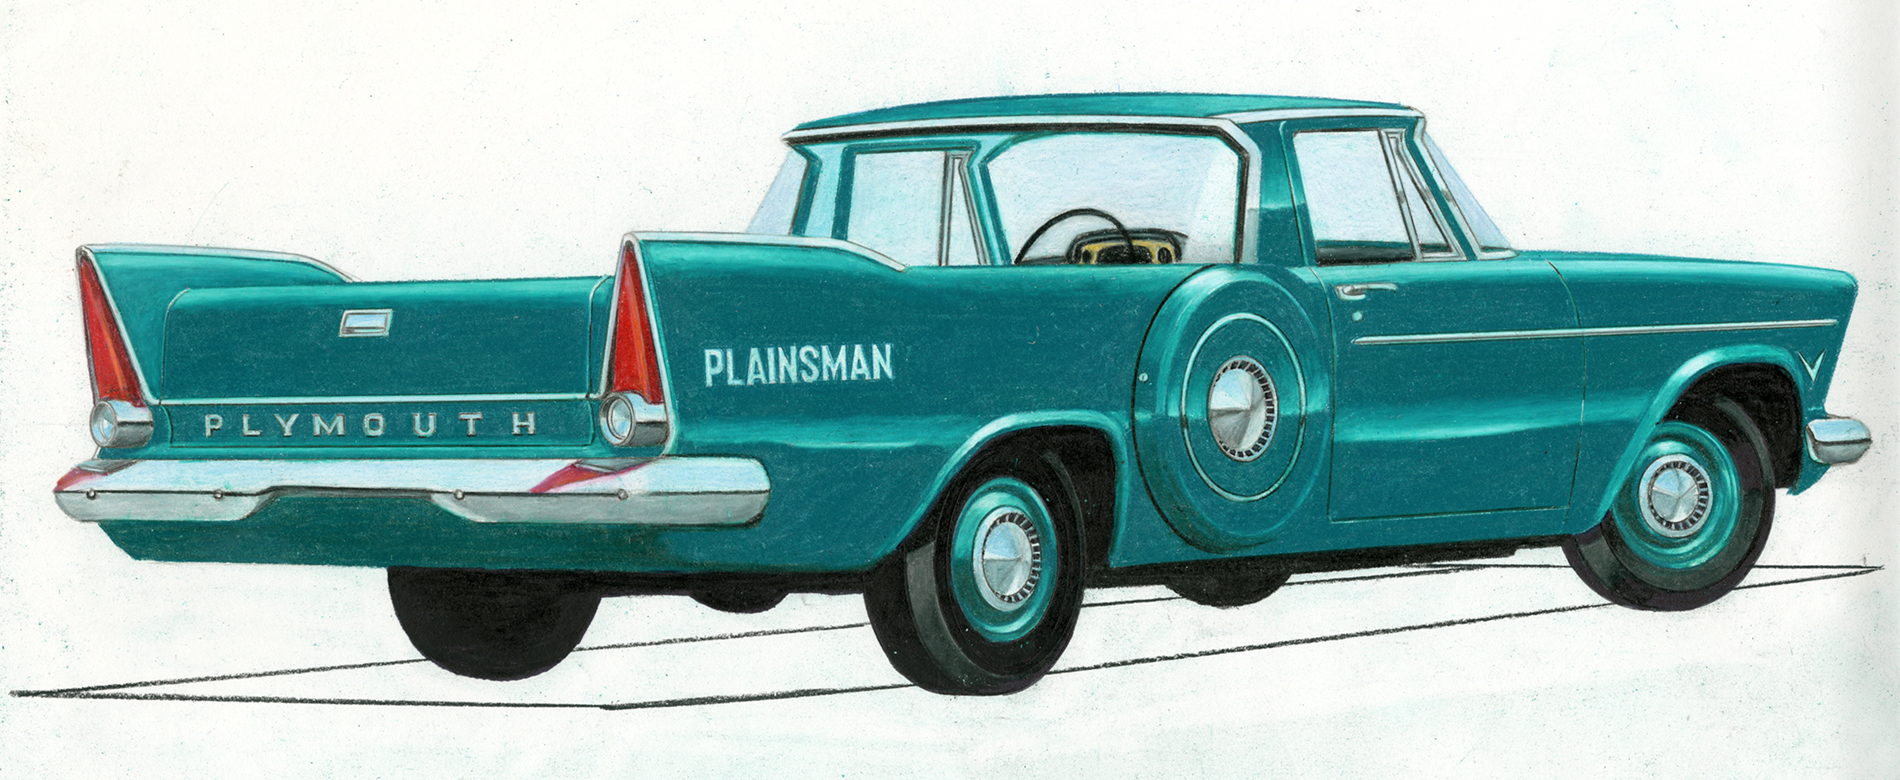 Plymouth Plainsman 